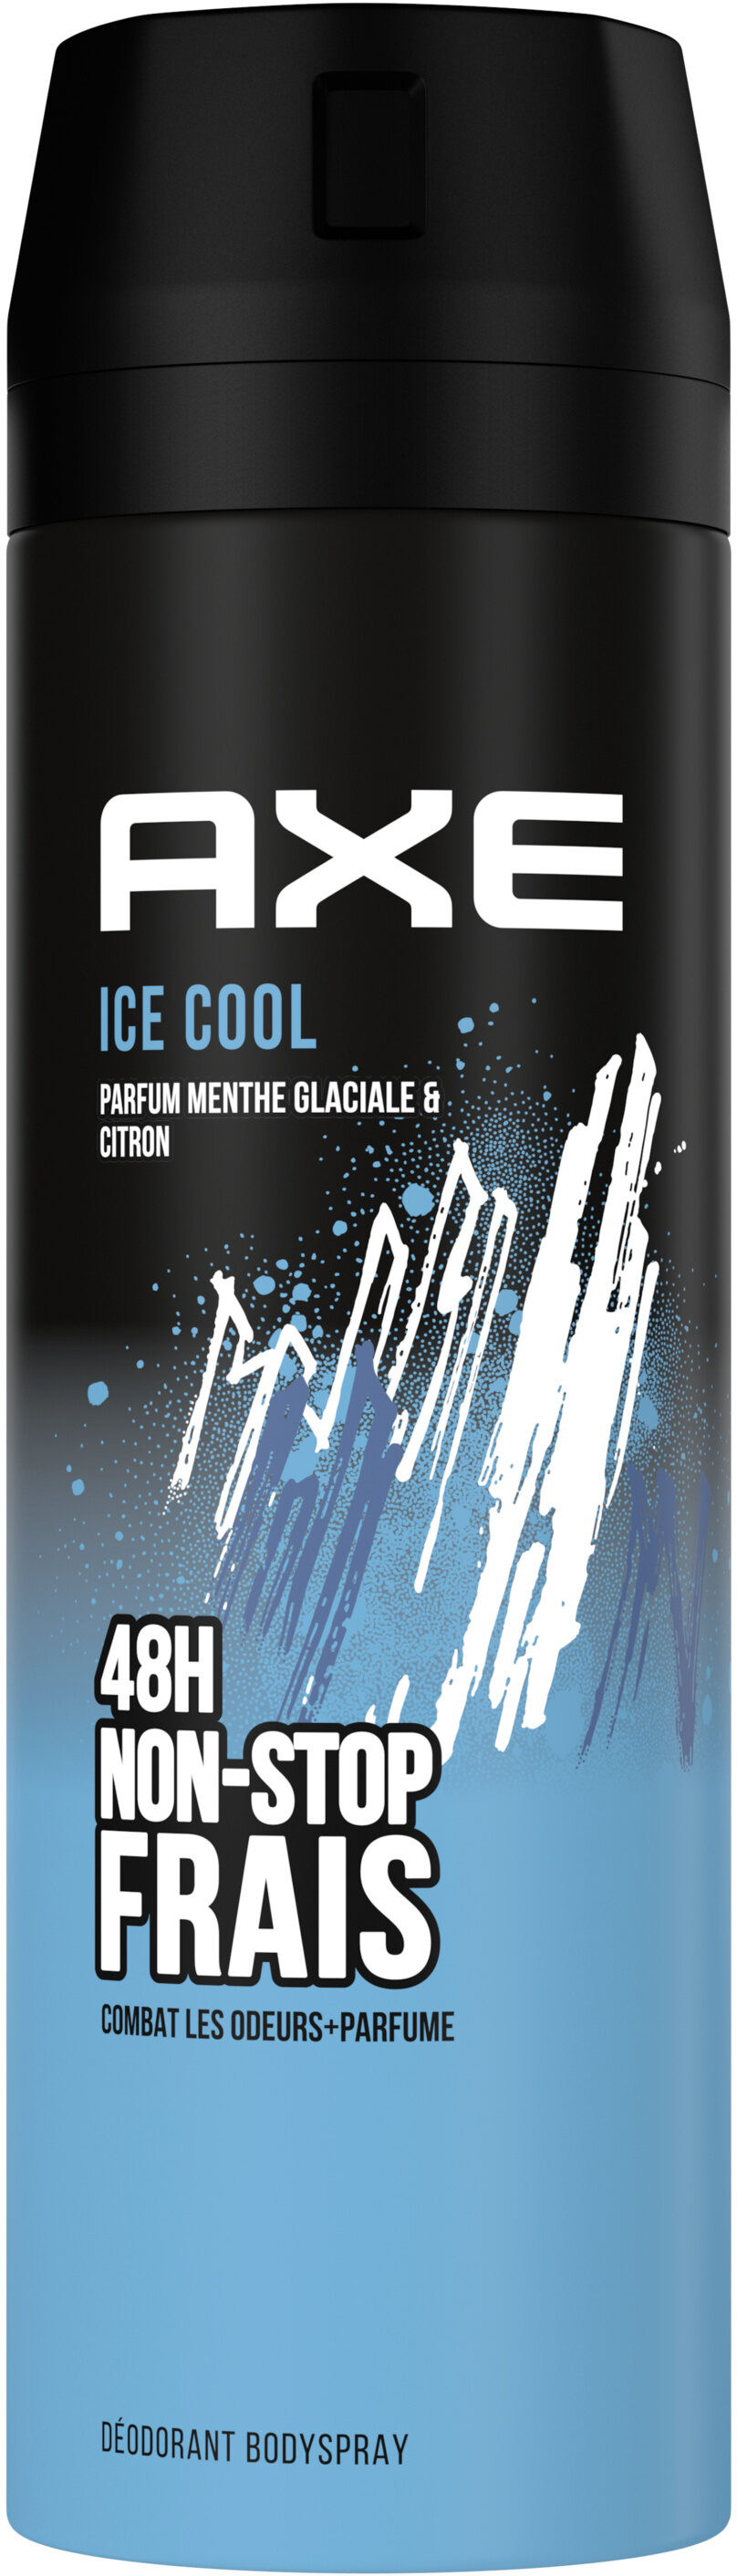 AXE Déodorant Homme Bodyspray Ice Cool 48h Non-Stop Frais - Produit - fr